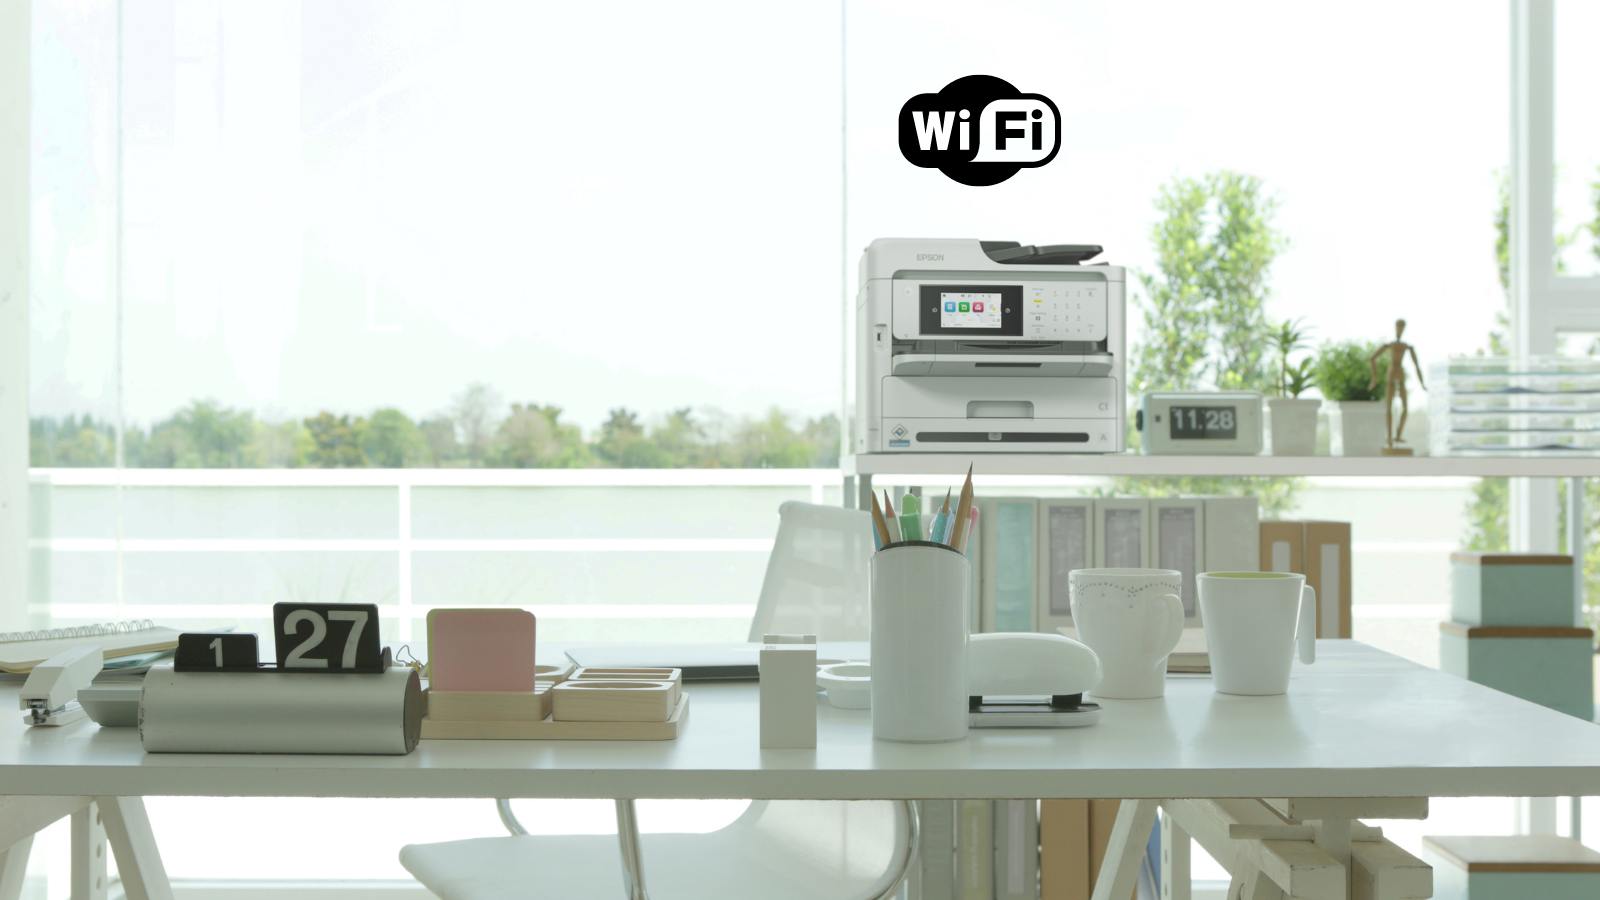 Je bekijkt nu Epson printer verbinden met wifi: Stapsgewijze uitleg